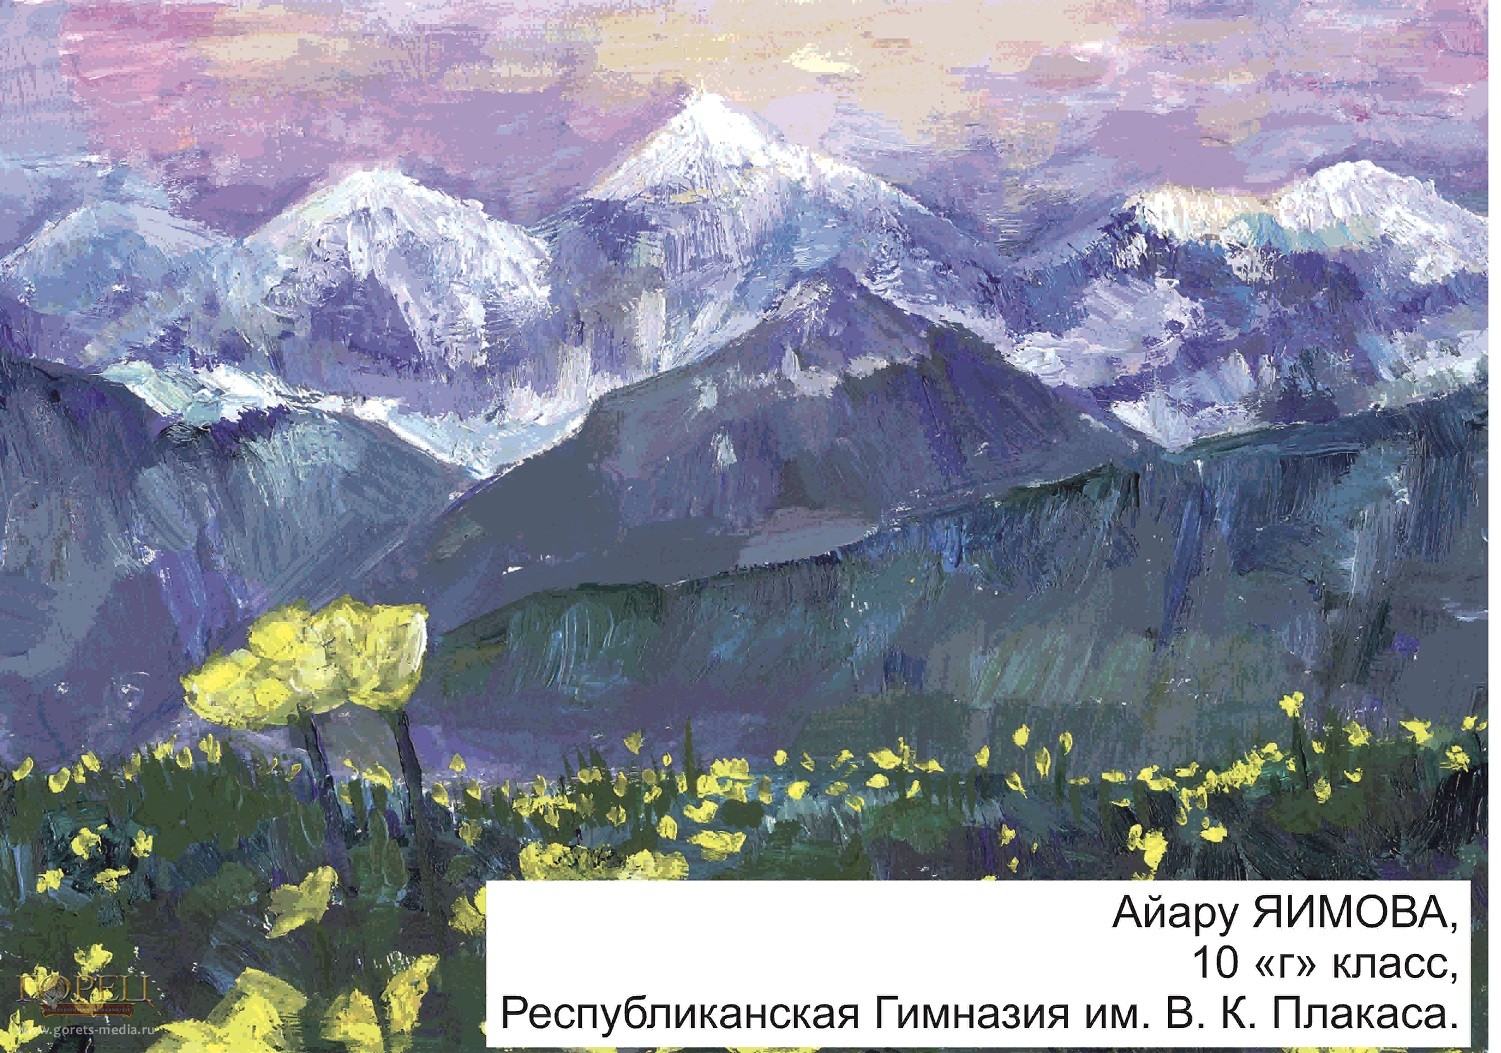 Рисунок Айару Яимовой, победивший в конкурсе «Белуха – священная гора»